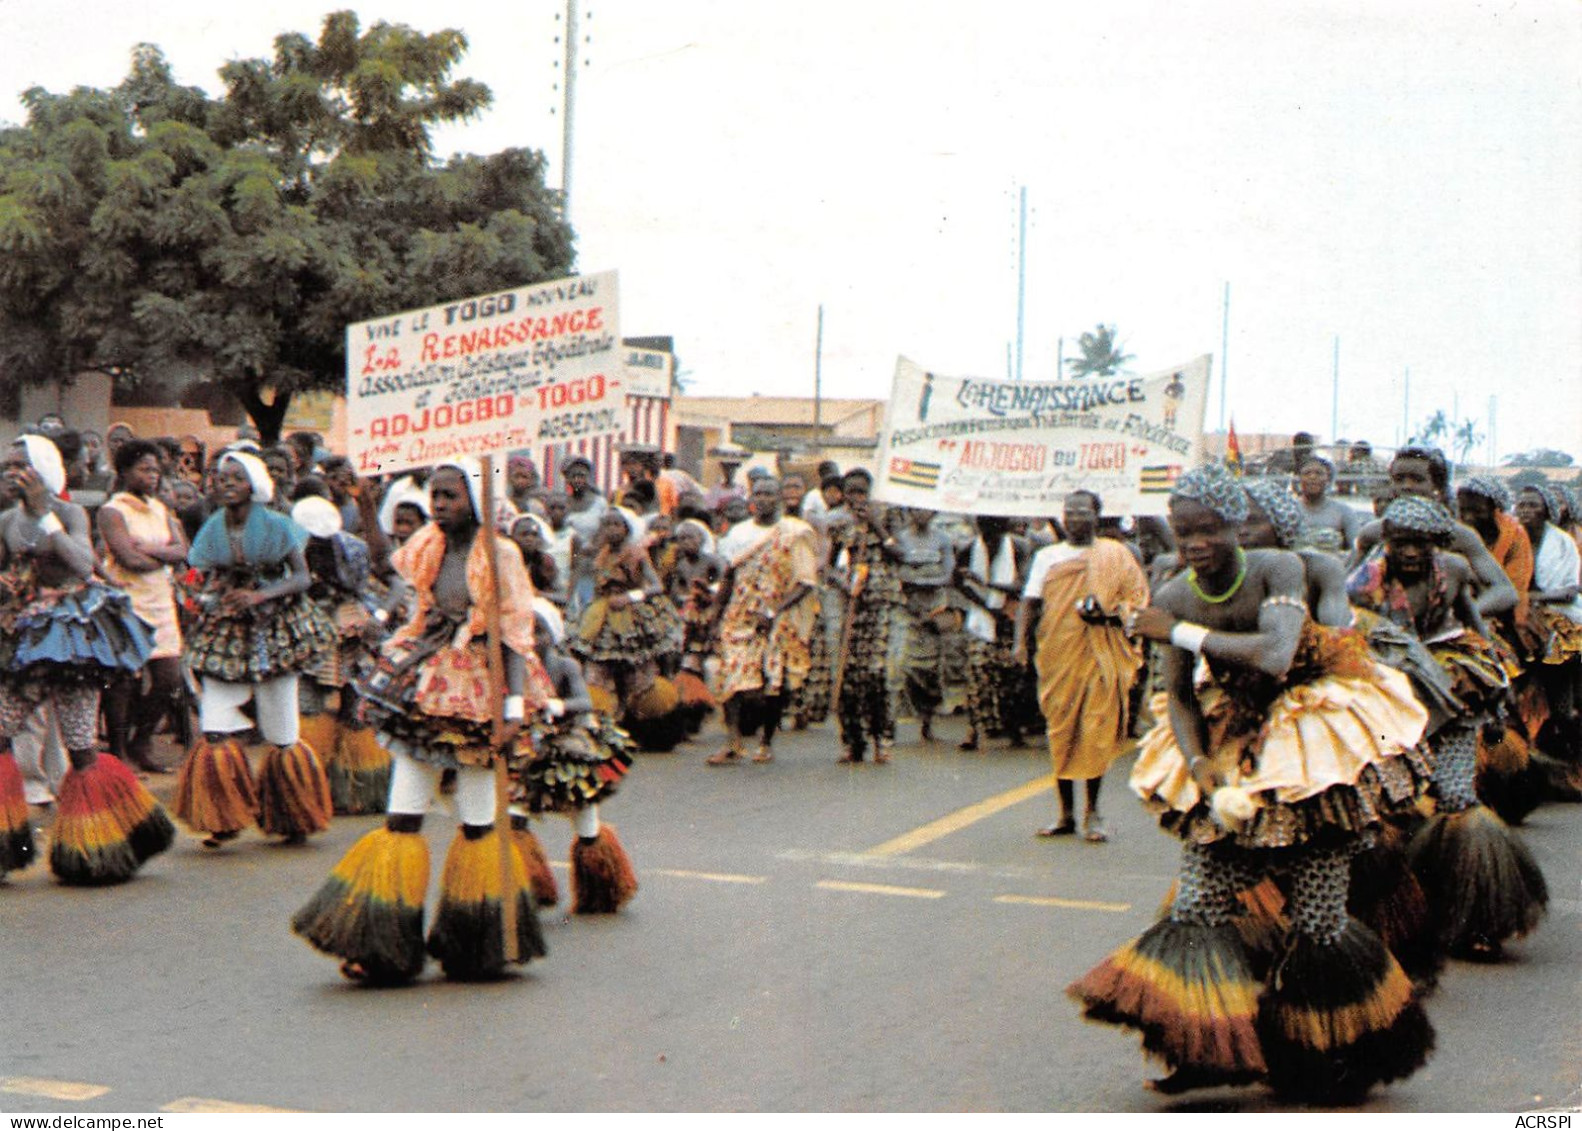 TOGO Lomé Danse Adjogbo Association Artistique La Renaissance Dance Théatre éd KAP à Niamey (Scan R/V) N° 57 \MP7135 - Togo